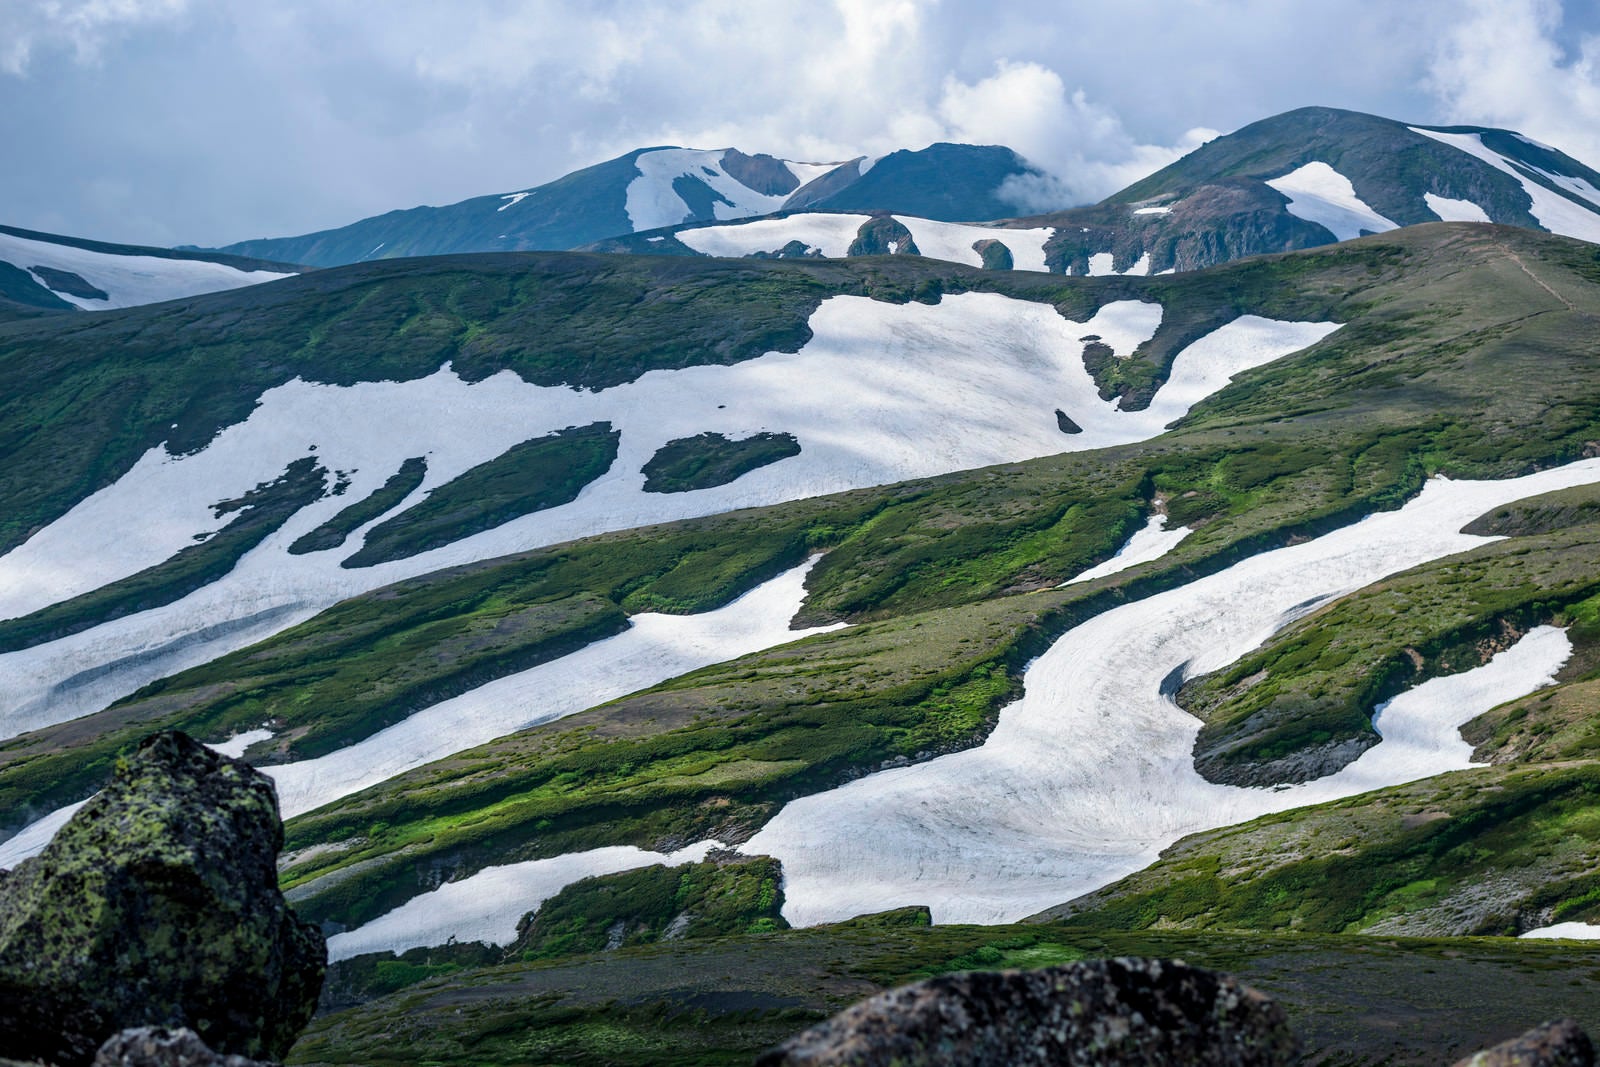 「大雪山の万年雪の見せる景色」の写真